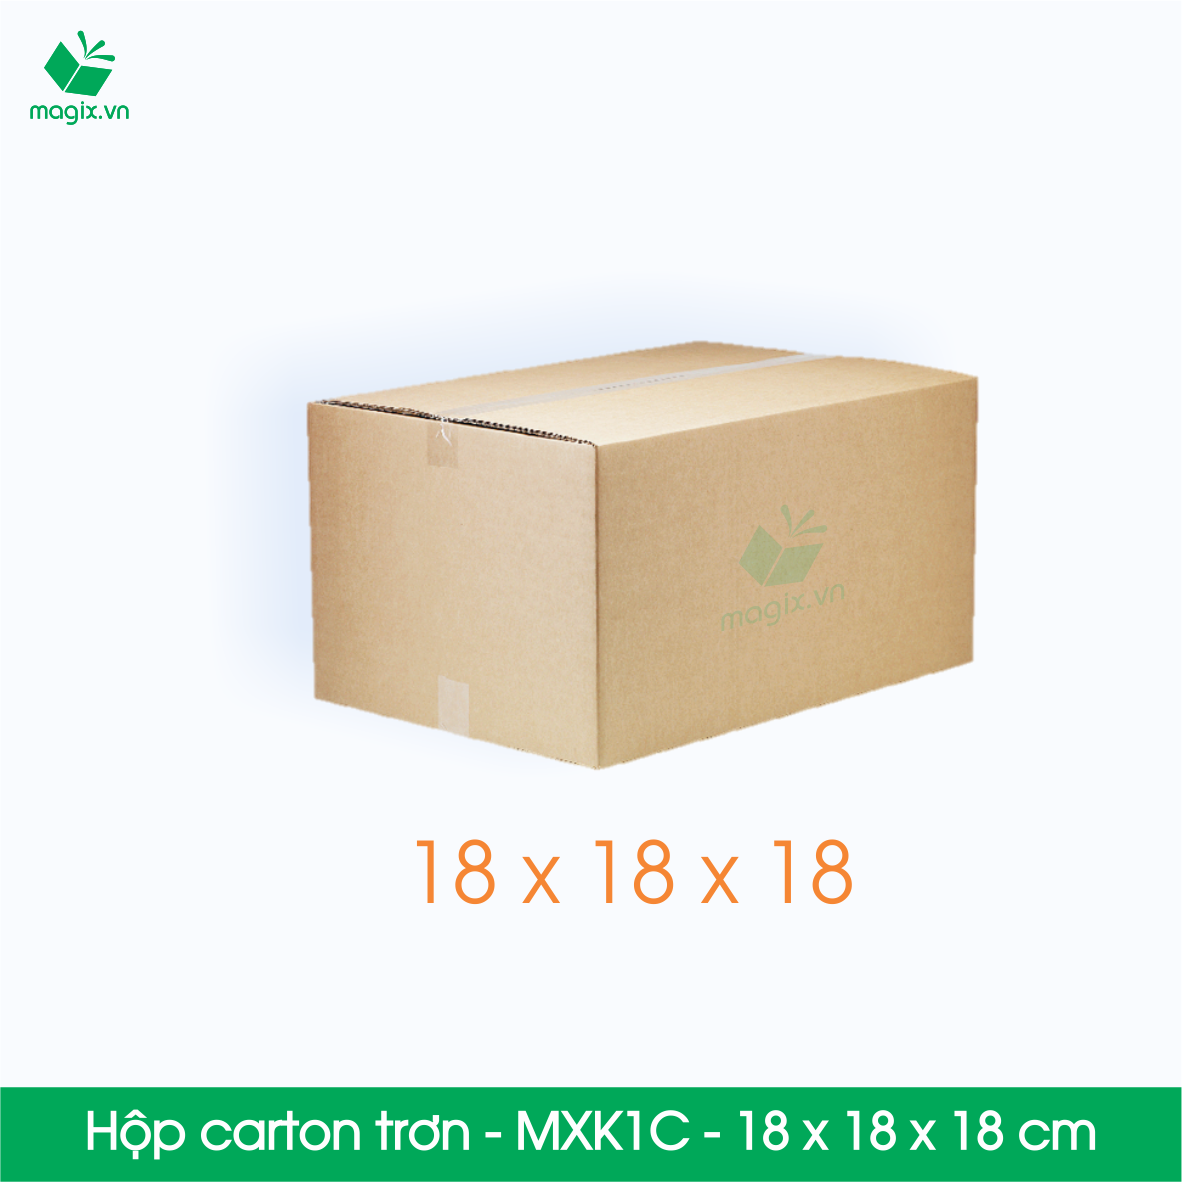 MXK1C - 18x18x18 cm - 100 thùng hộp carton trơn đóng hàng